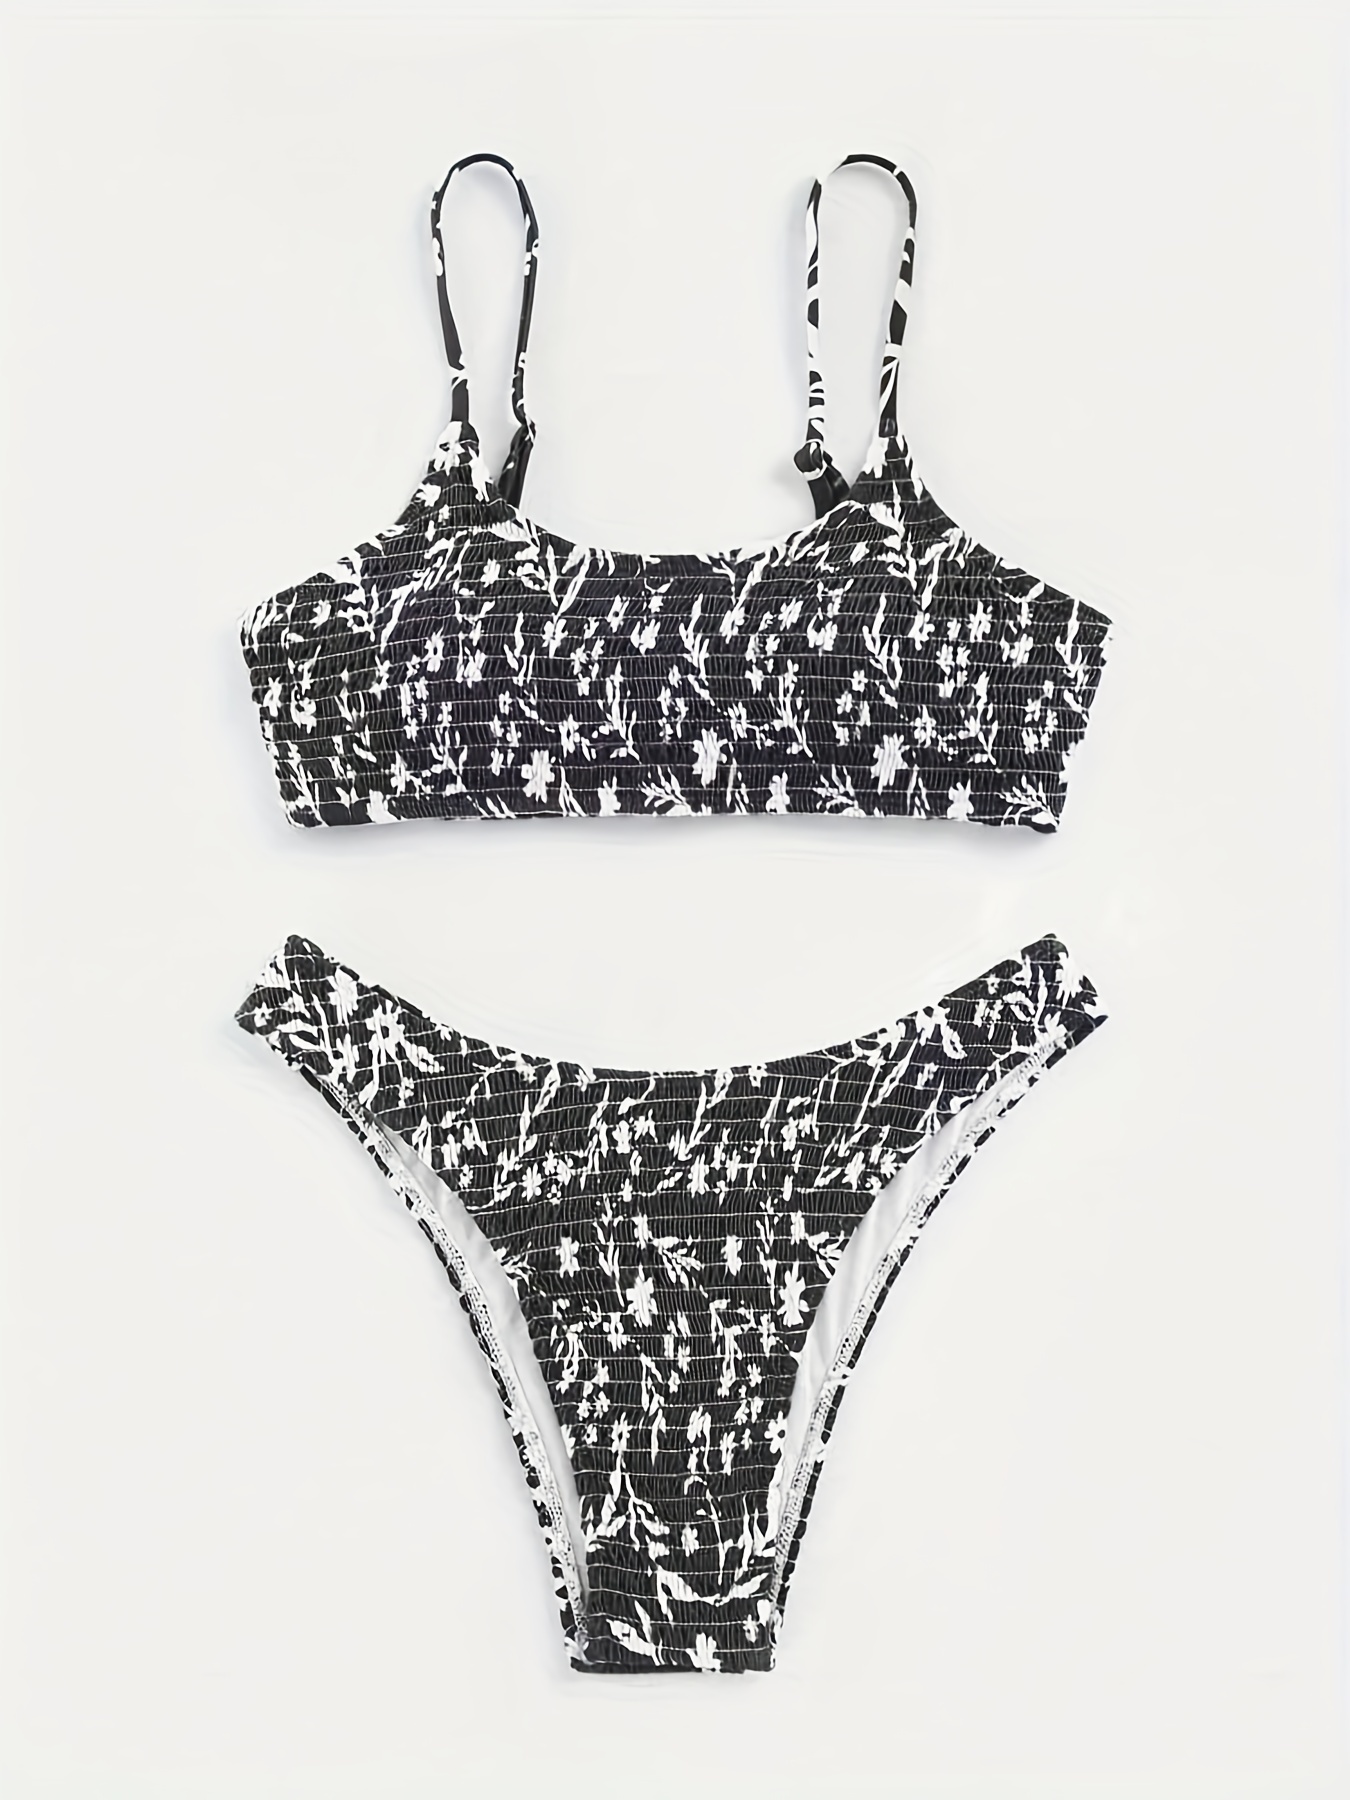 Lands' End Women's UPF 50 Floral Print Zip-Front Bikini Top - Black/White XS